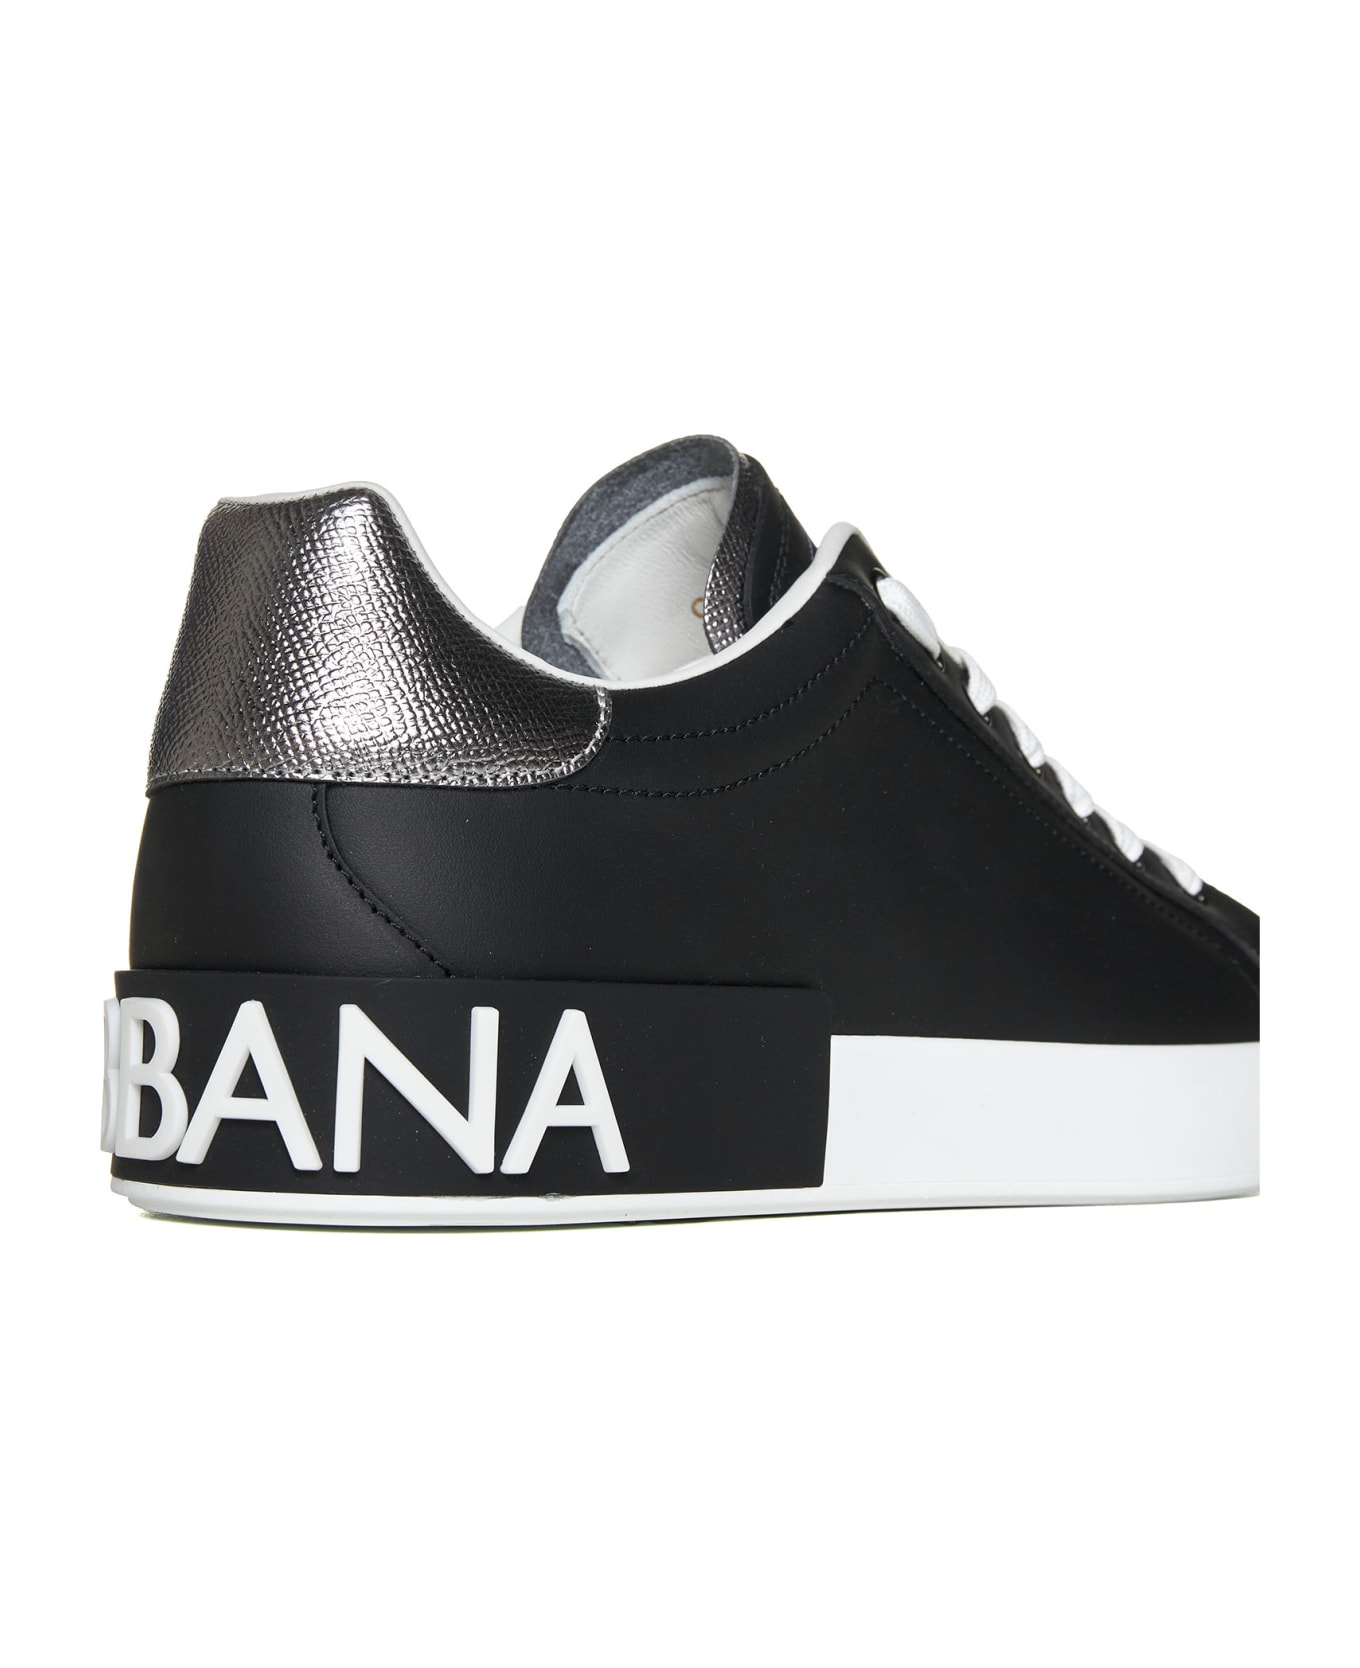 Dolce & Gabbana Portofino Leather Sneakers - Black / Silver